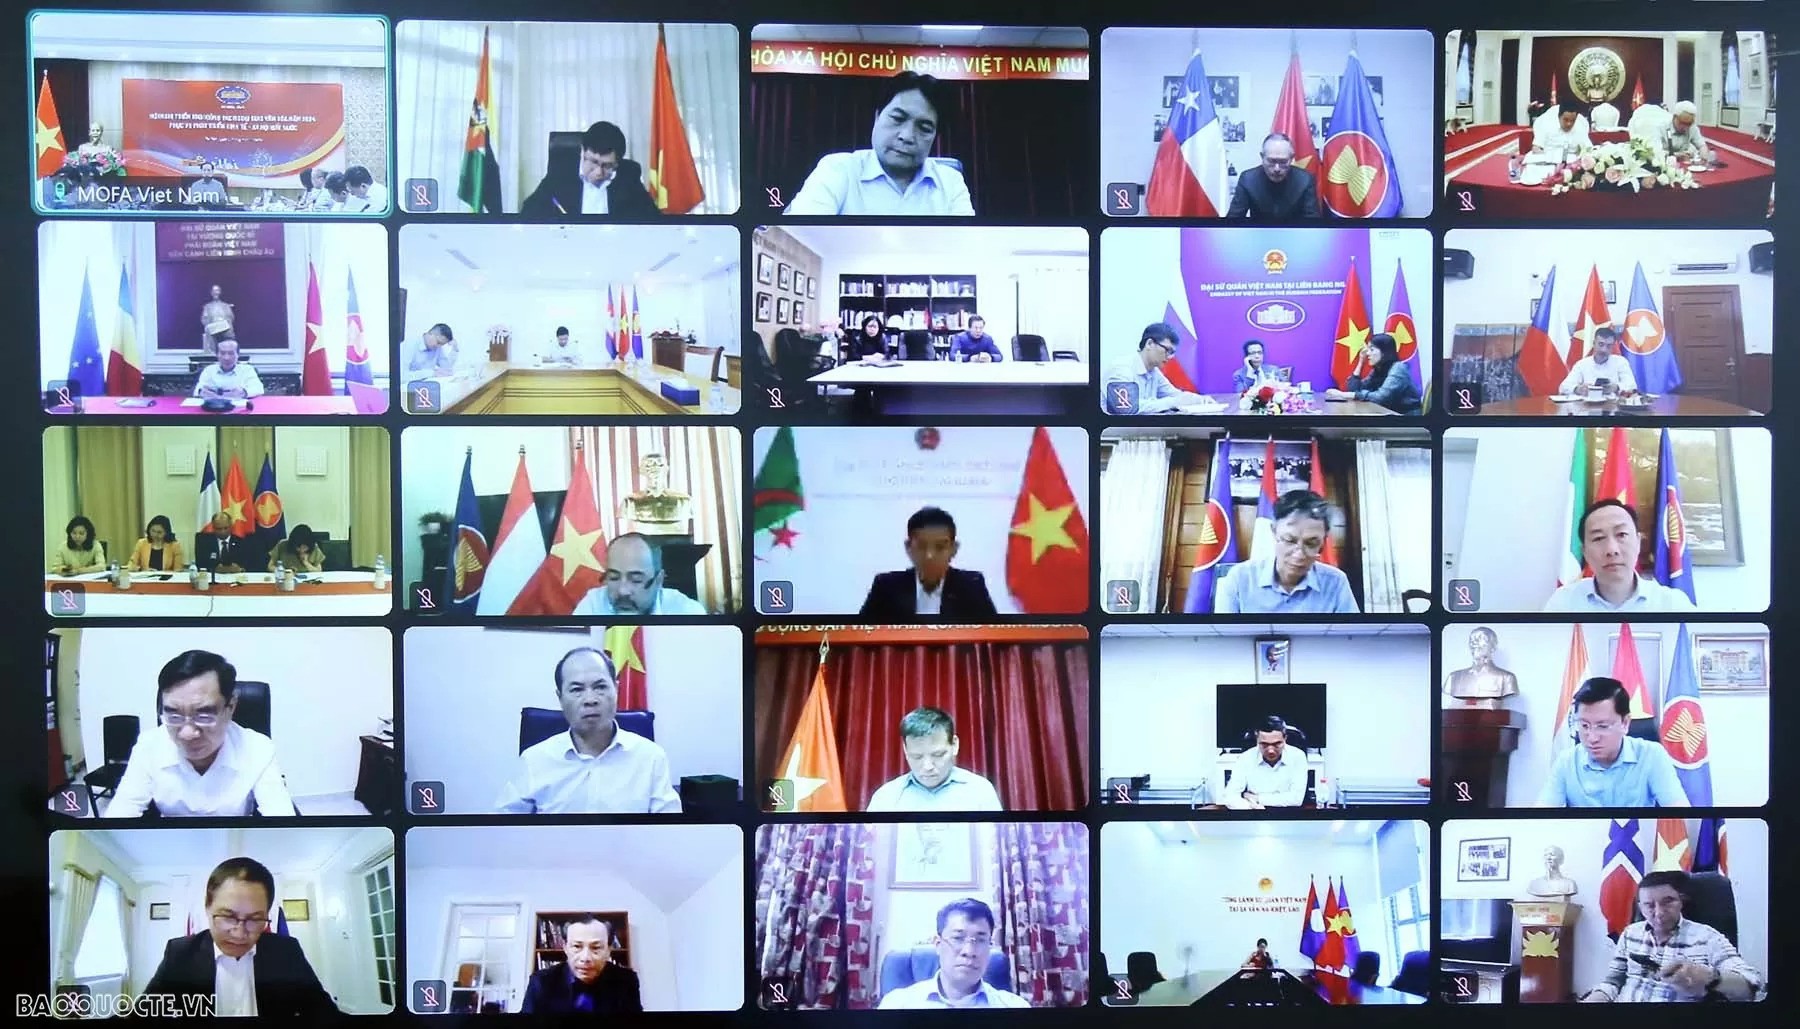 Các Đại sứ, Trưởng Cơ quan đại diện Việt Nam ở nước ngoài tham dự Hội nghị trực tuyến.